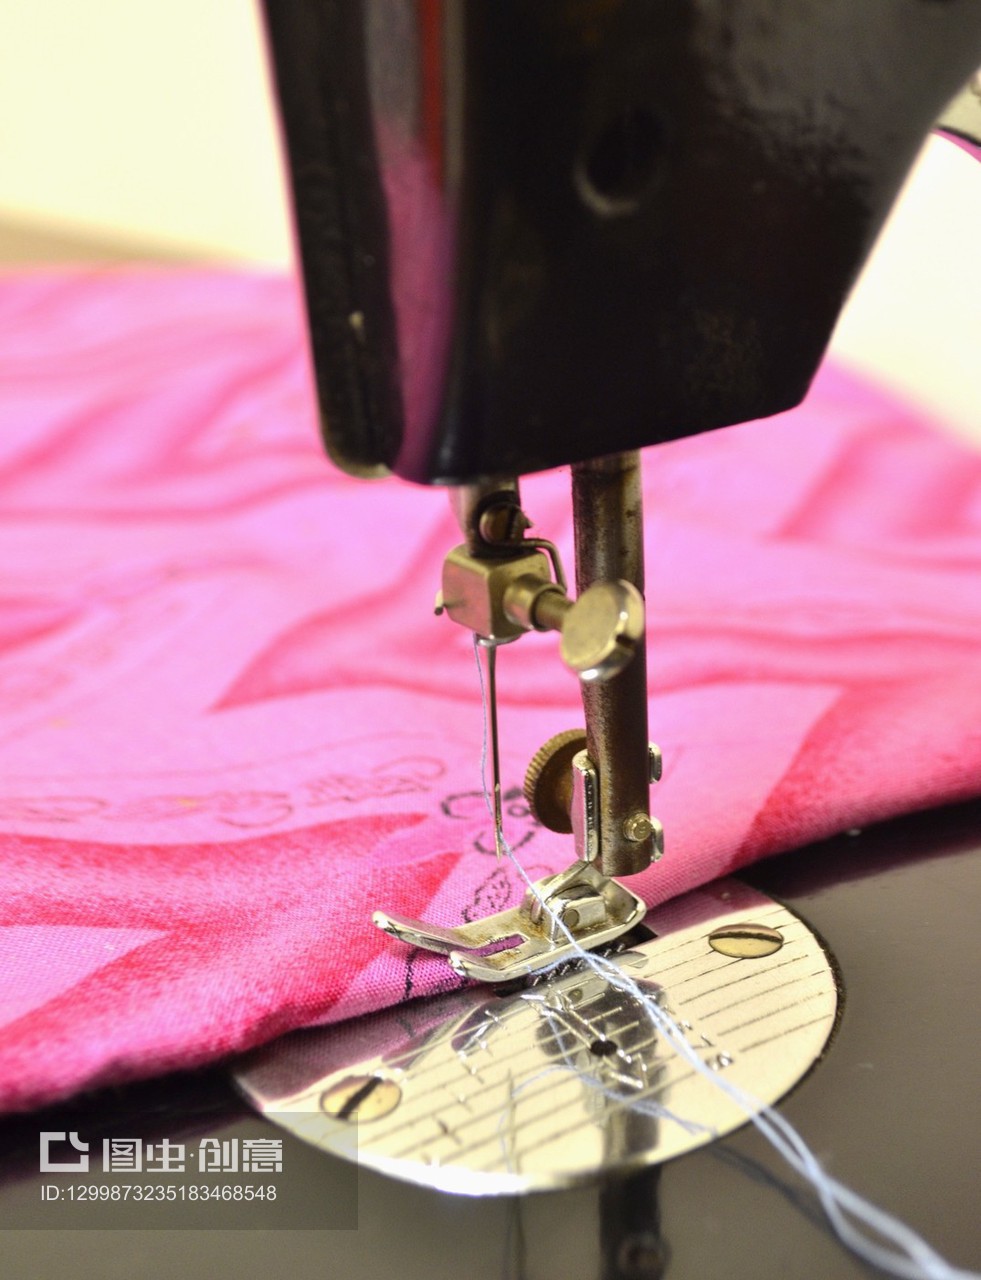 缝纫机和纺织品